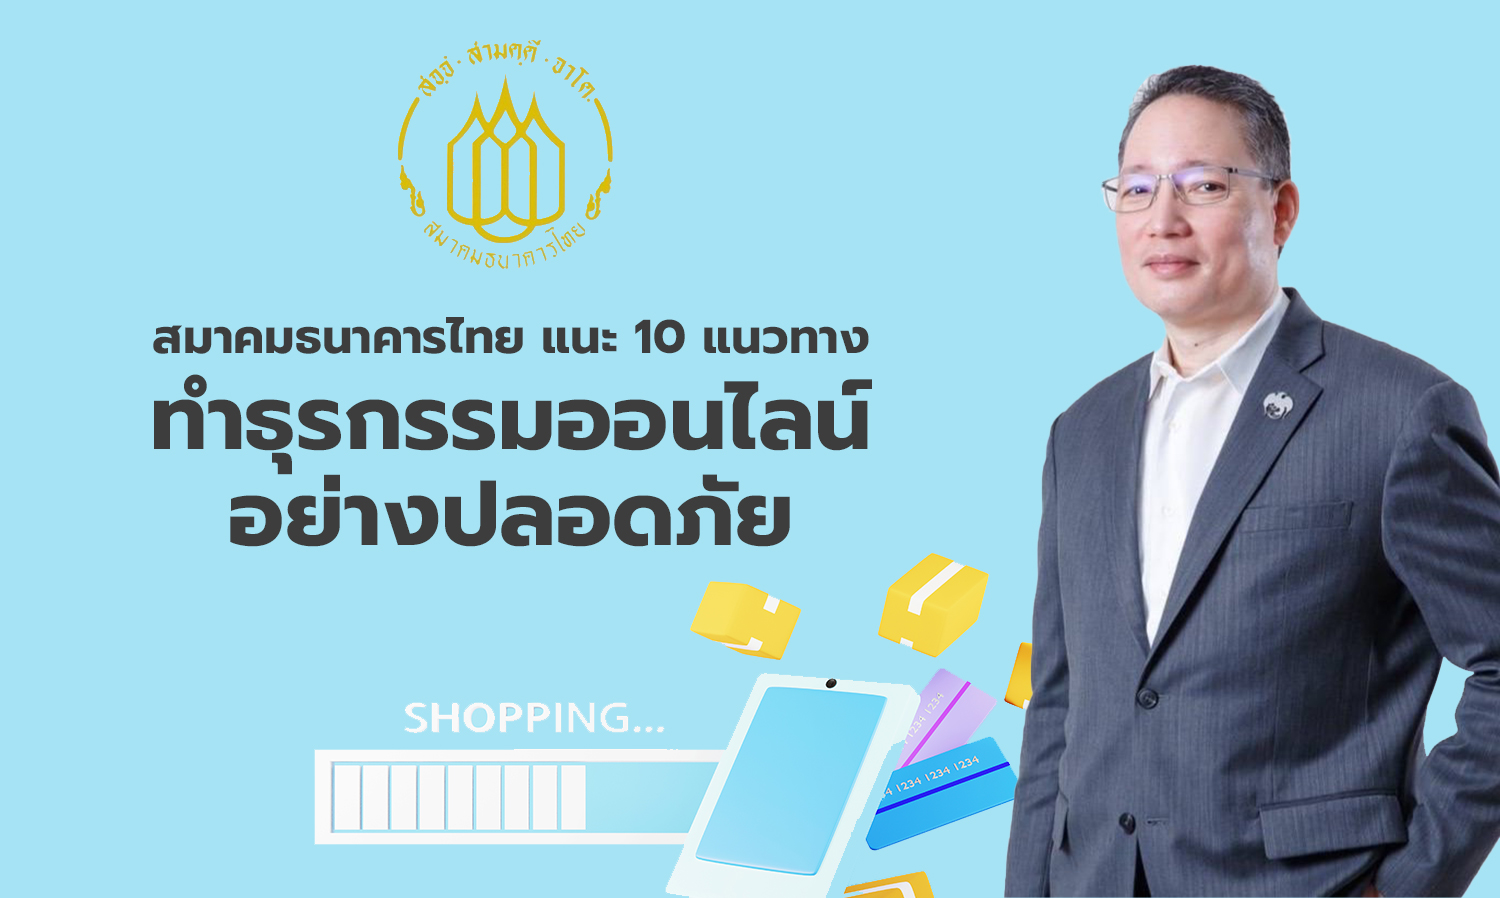 สมาคมธนาคารไทย แนะ 10 แนวทาง ทำธุรกรรมออนไลน์อย่างปลอดภัย